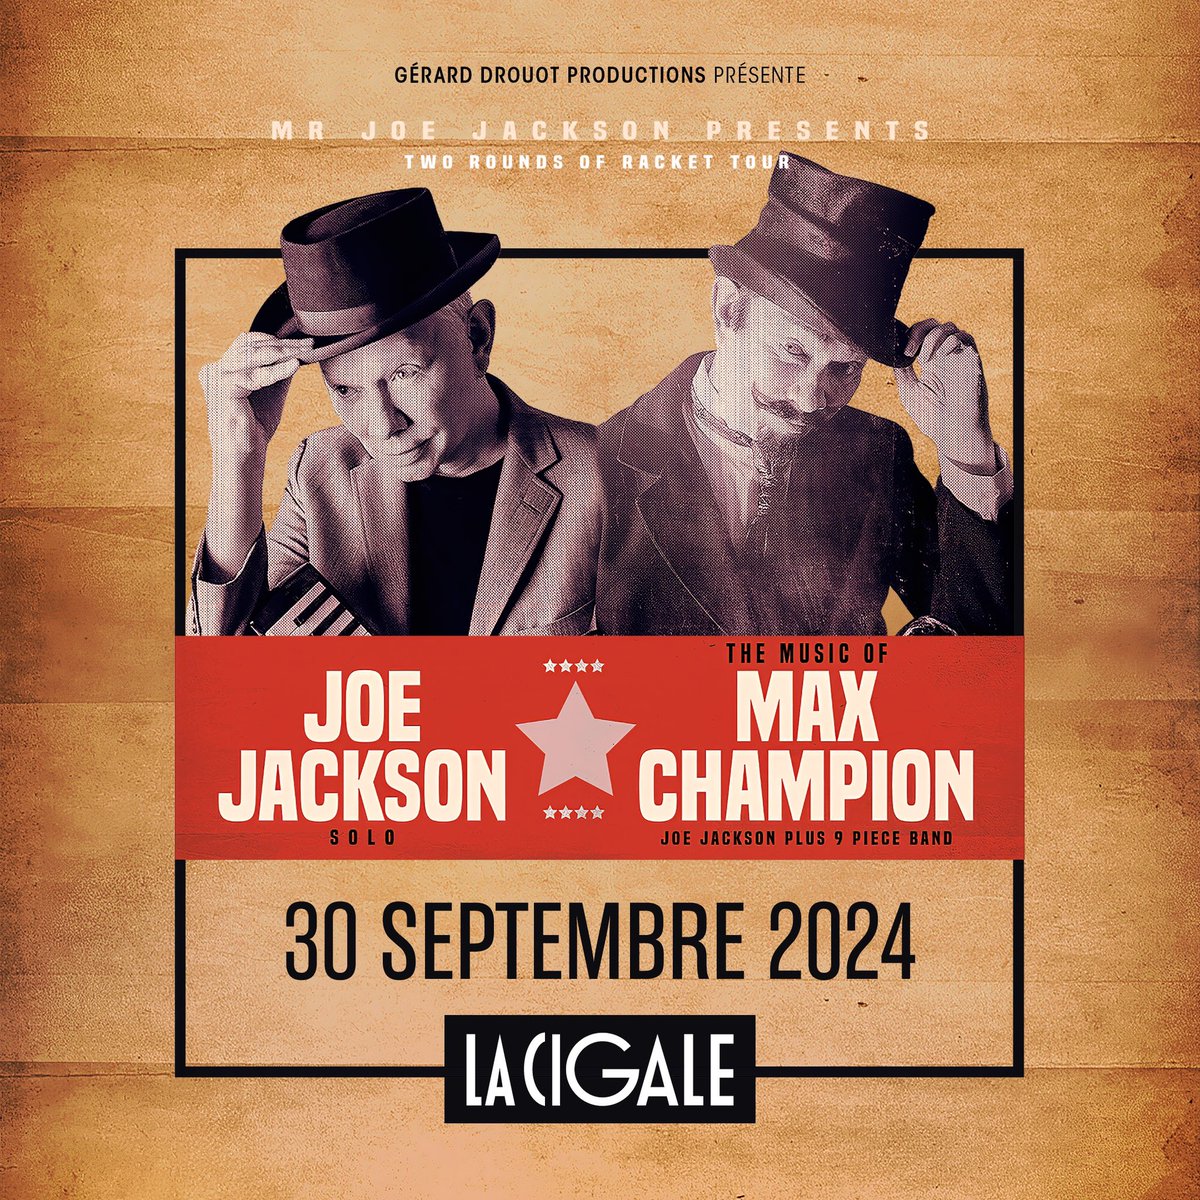 Retrouvez @JoeJacksonMusic pour un concert exceptionnel à La Cigale le 30 septembre 2024 🤩 🎫 Prévente GDP : mercredi 13 mars à 11h